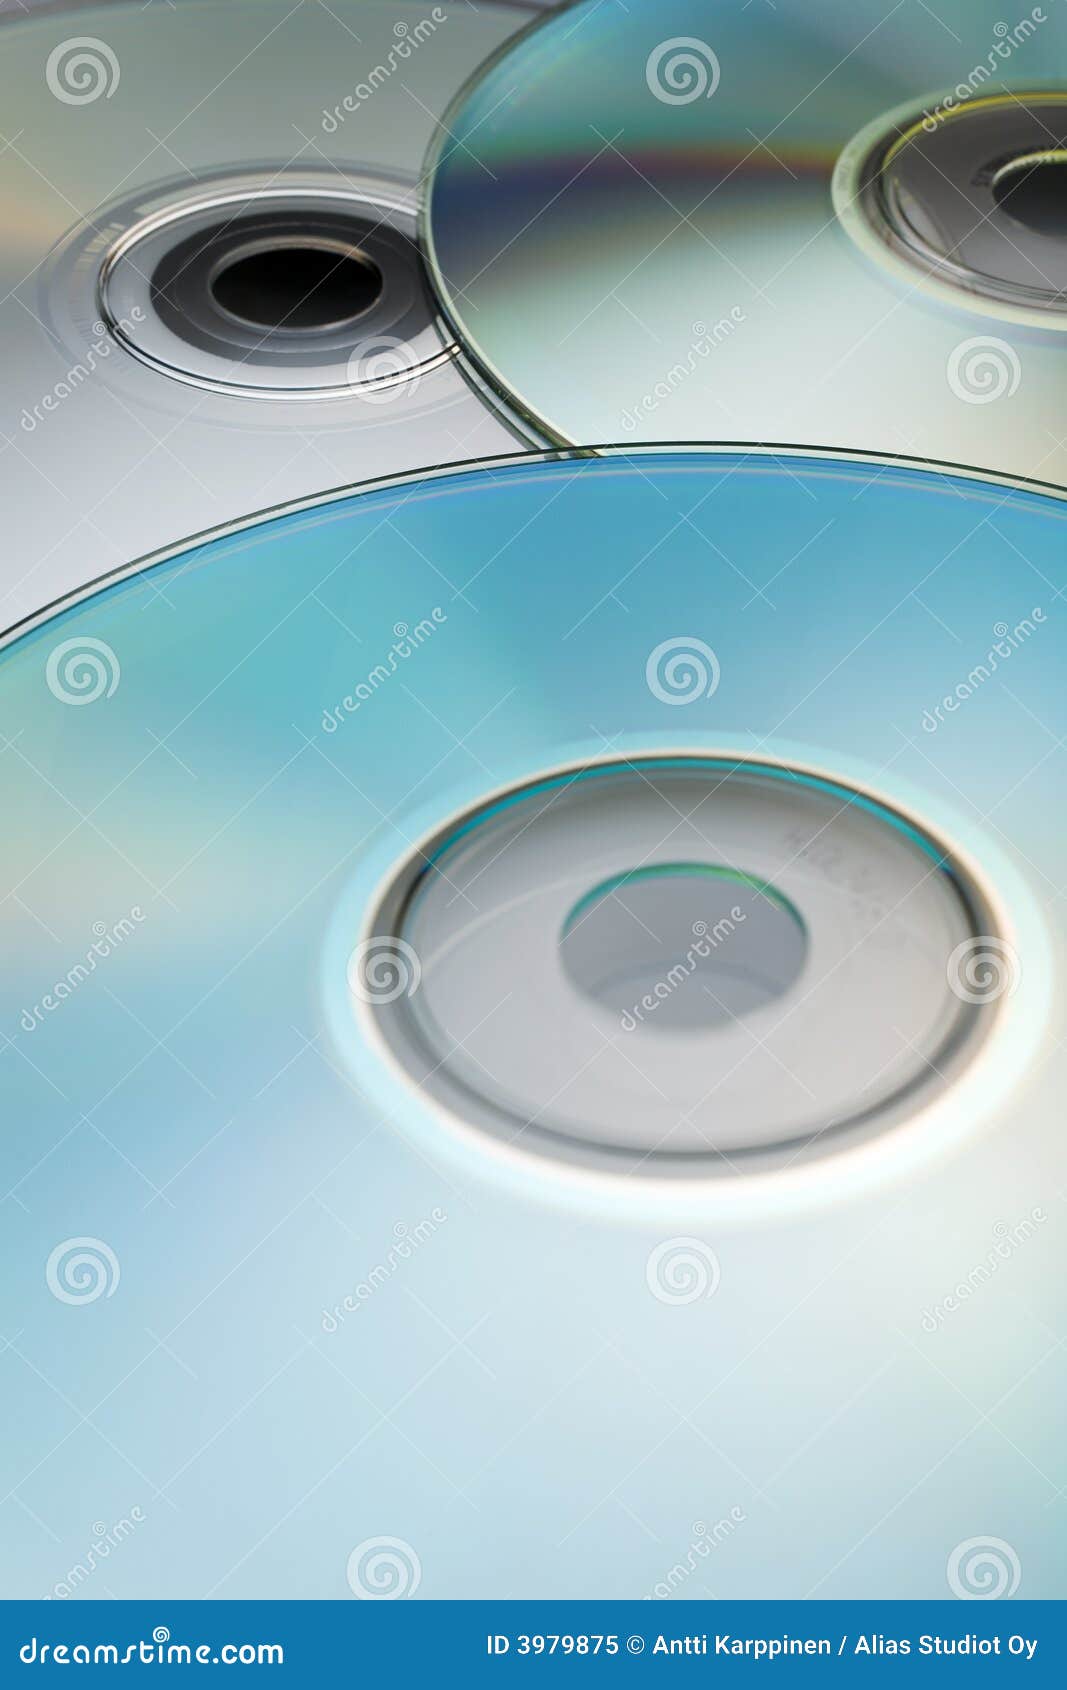 digital discs